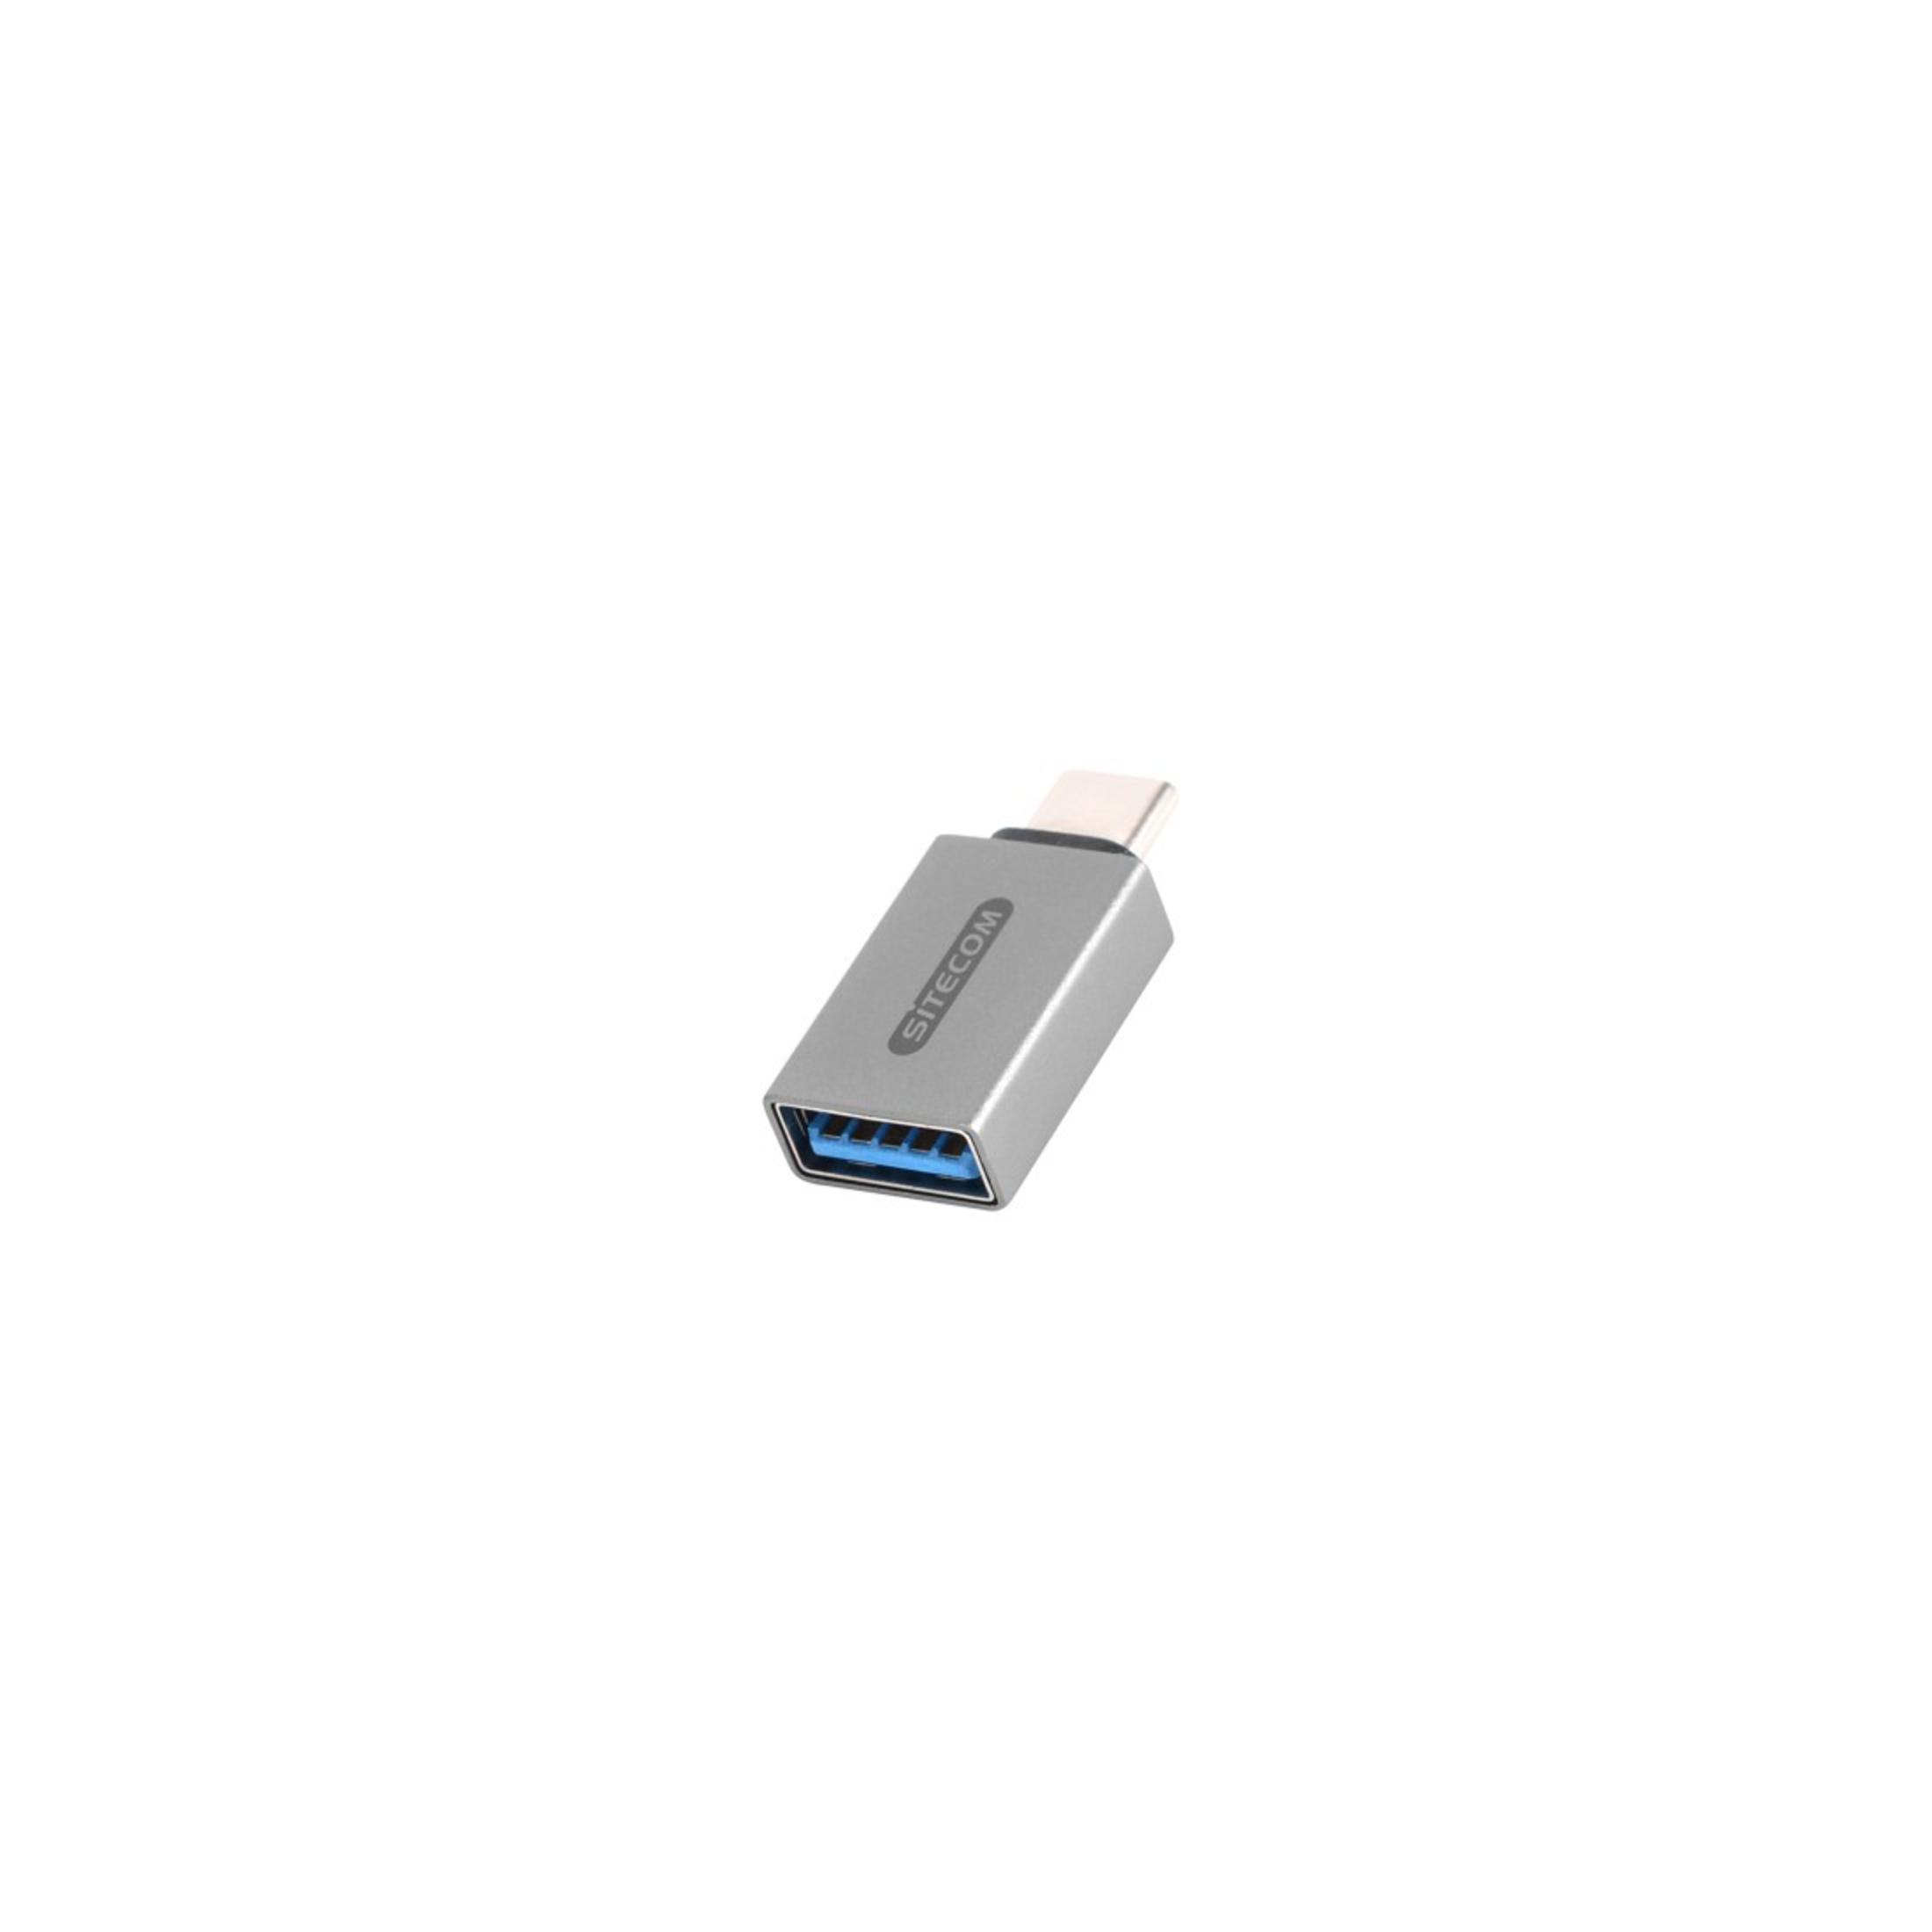 TO USB USB-A CN-370 3.1 Adapter, 3.0ADAPT. SITECOM Silber USB-C